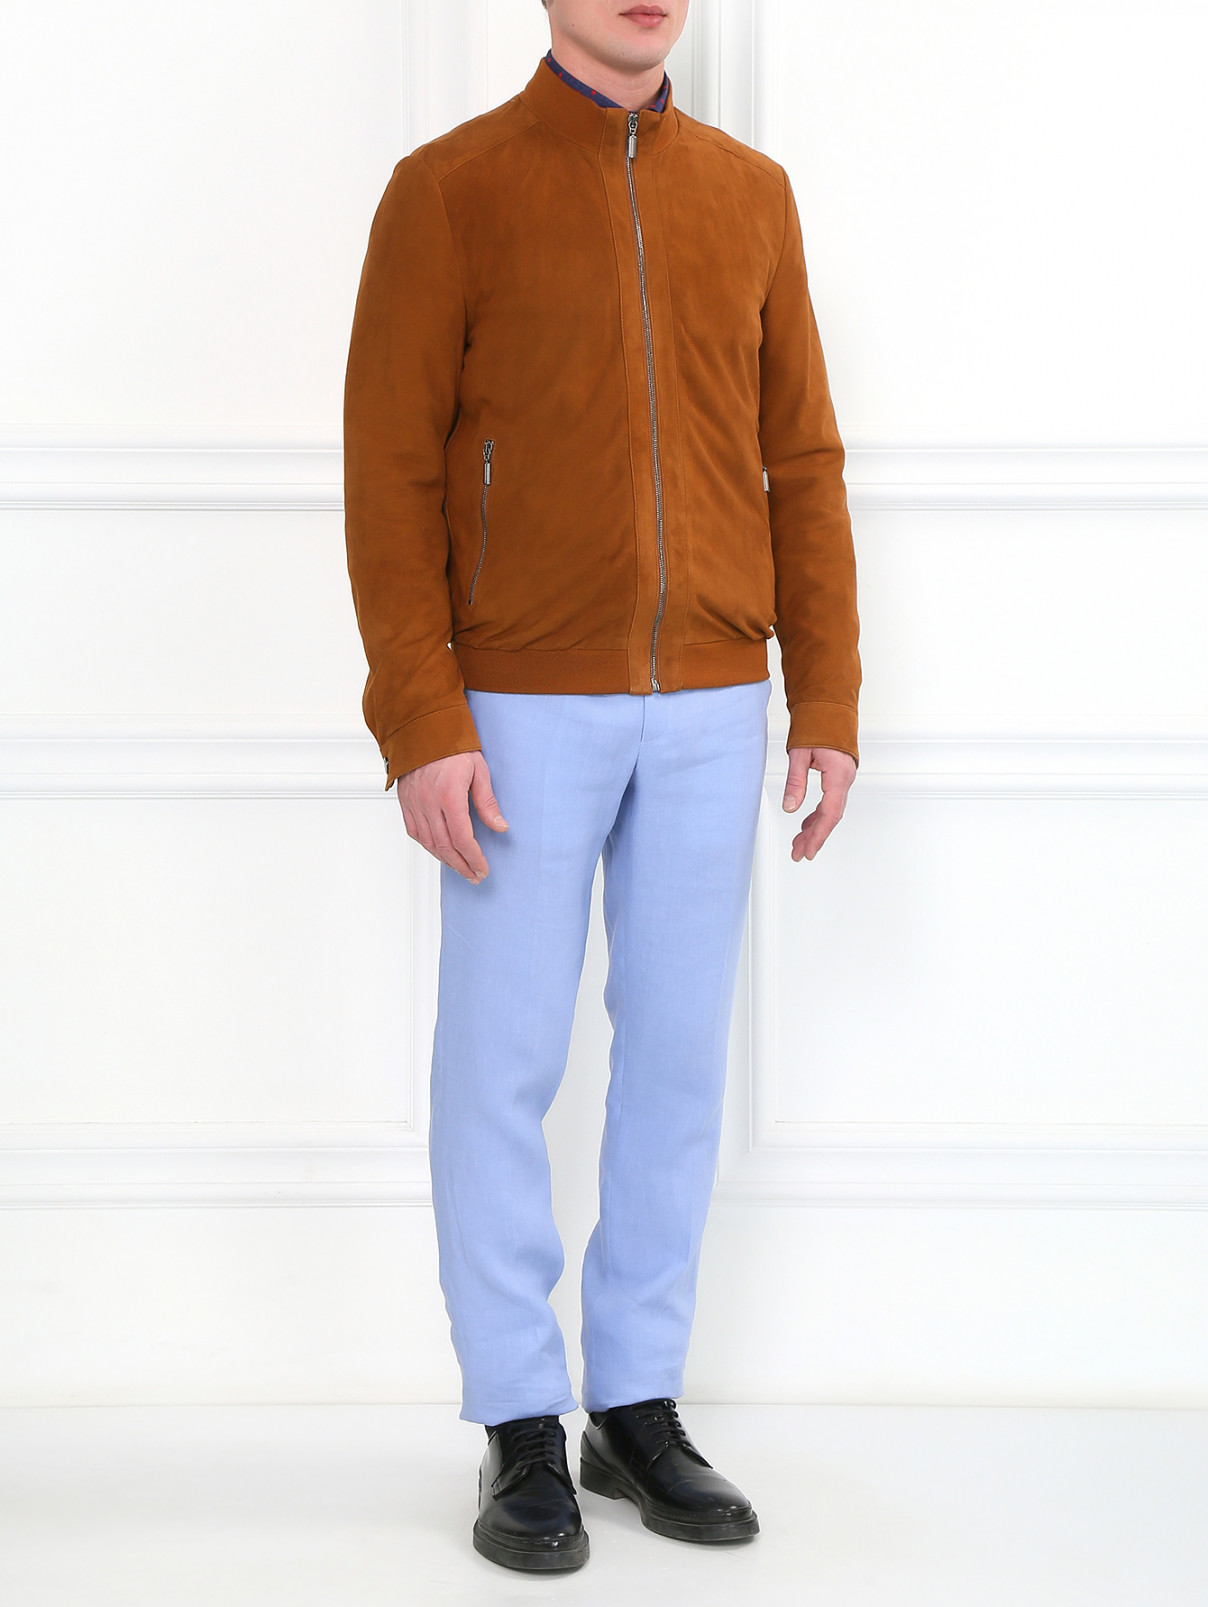 Куртка из замши на молнии Fontanelli  –  Модель Общий вид  – Цвет:  Бежевый